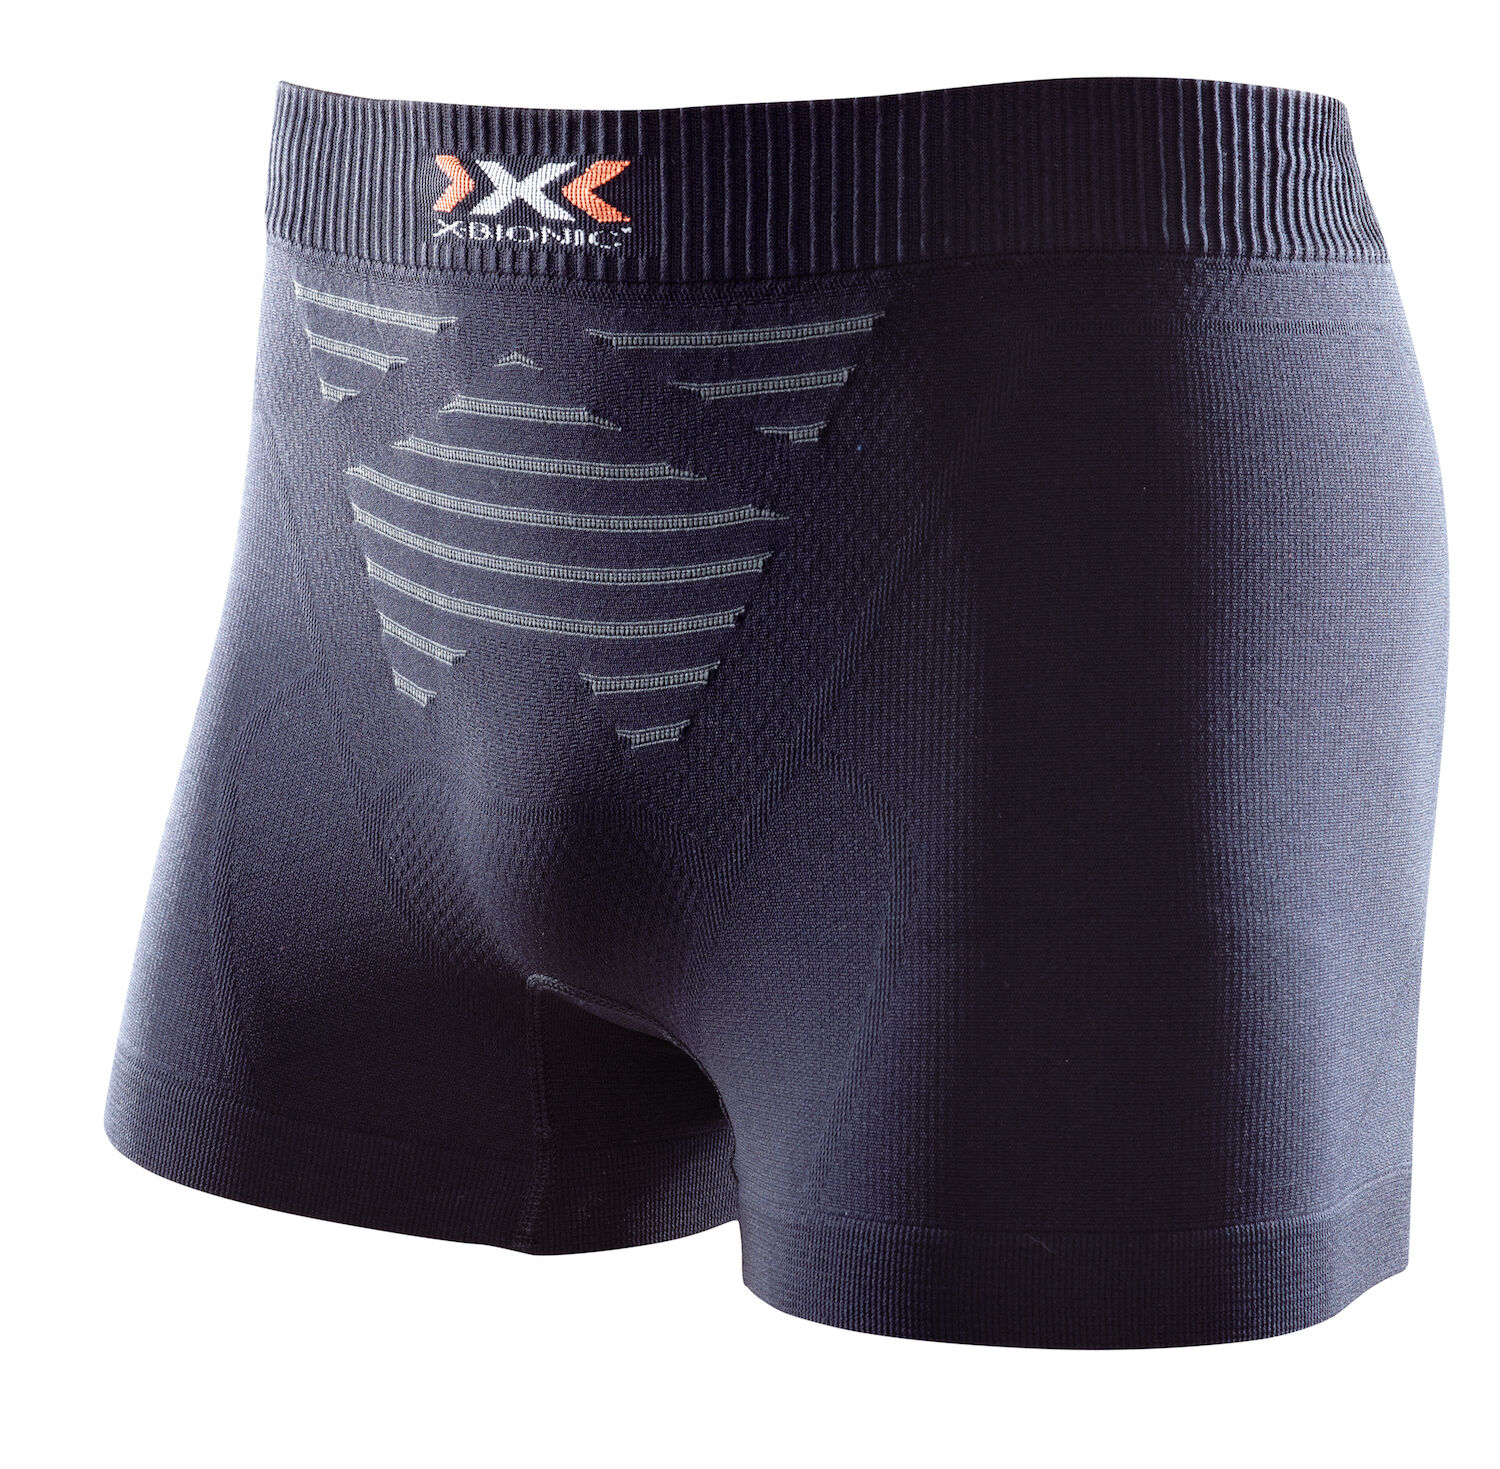 X-Bionic - Invent Summerlight - Underwear - Men's